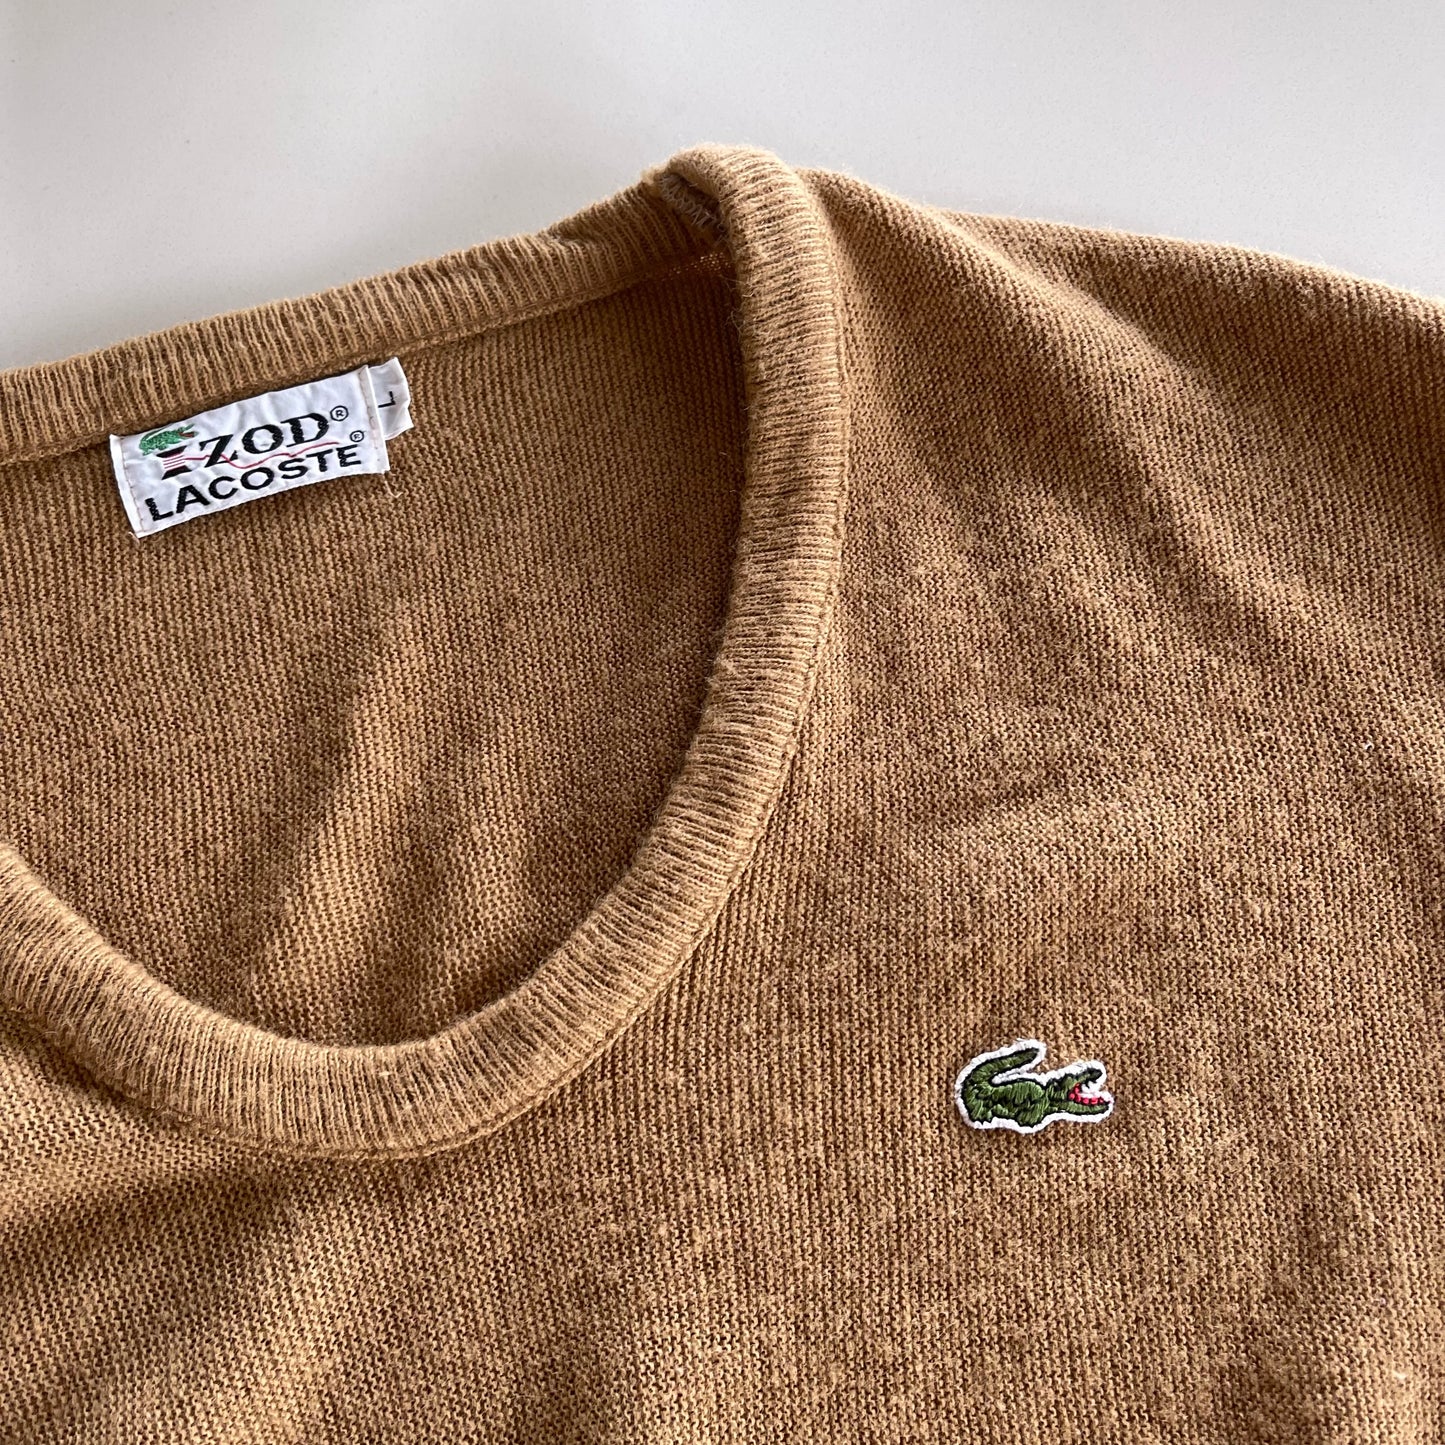 Vintage 60’s Lacoste x Izod Knit Sweater in Tan